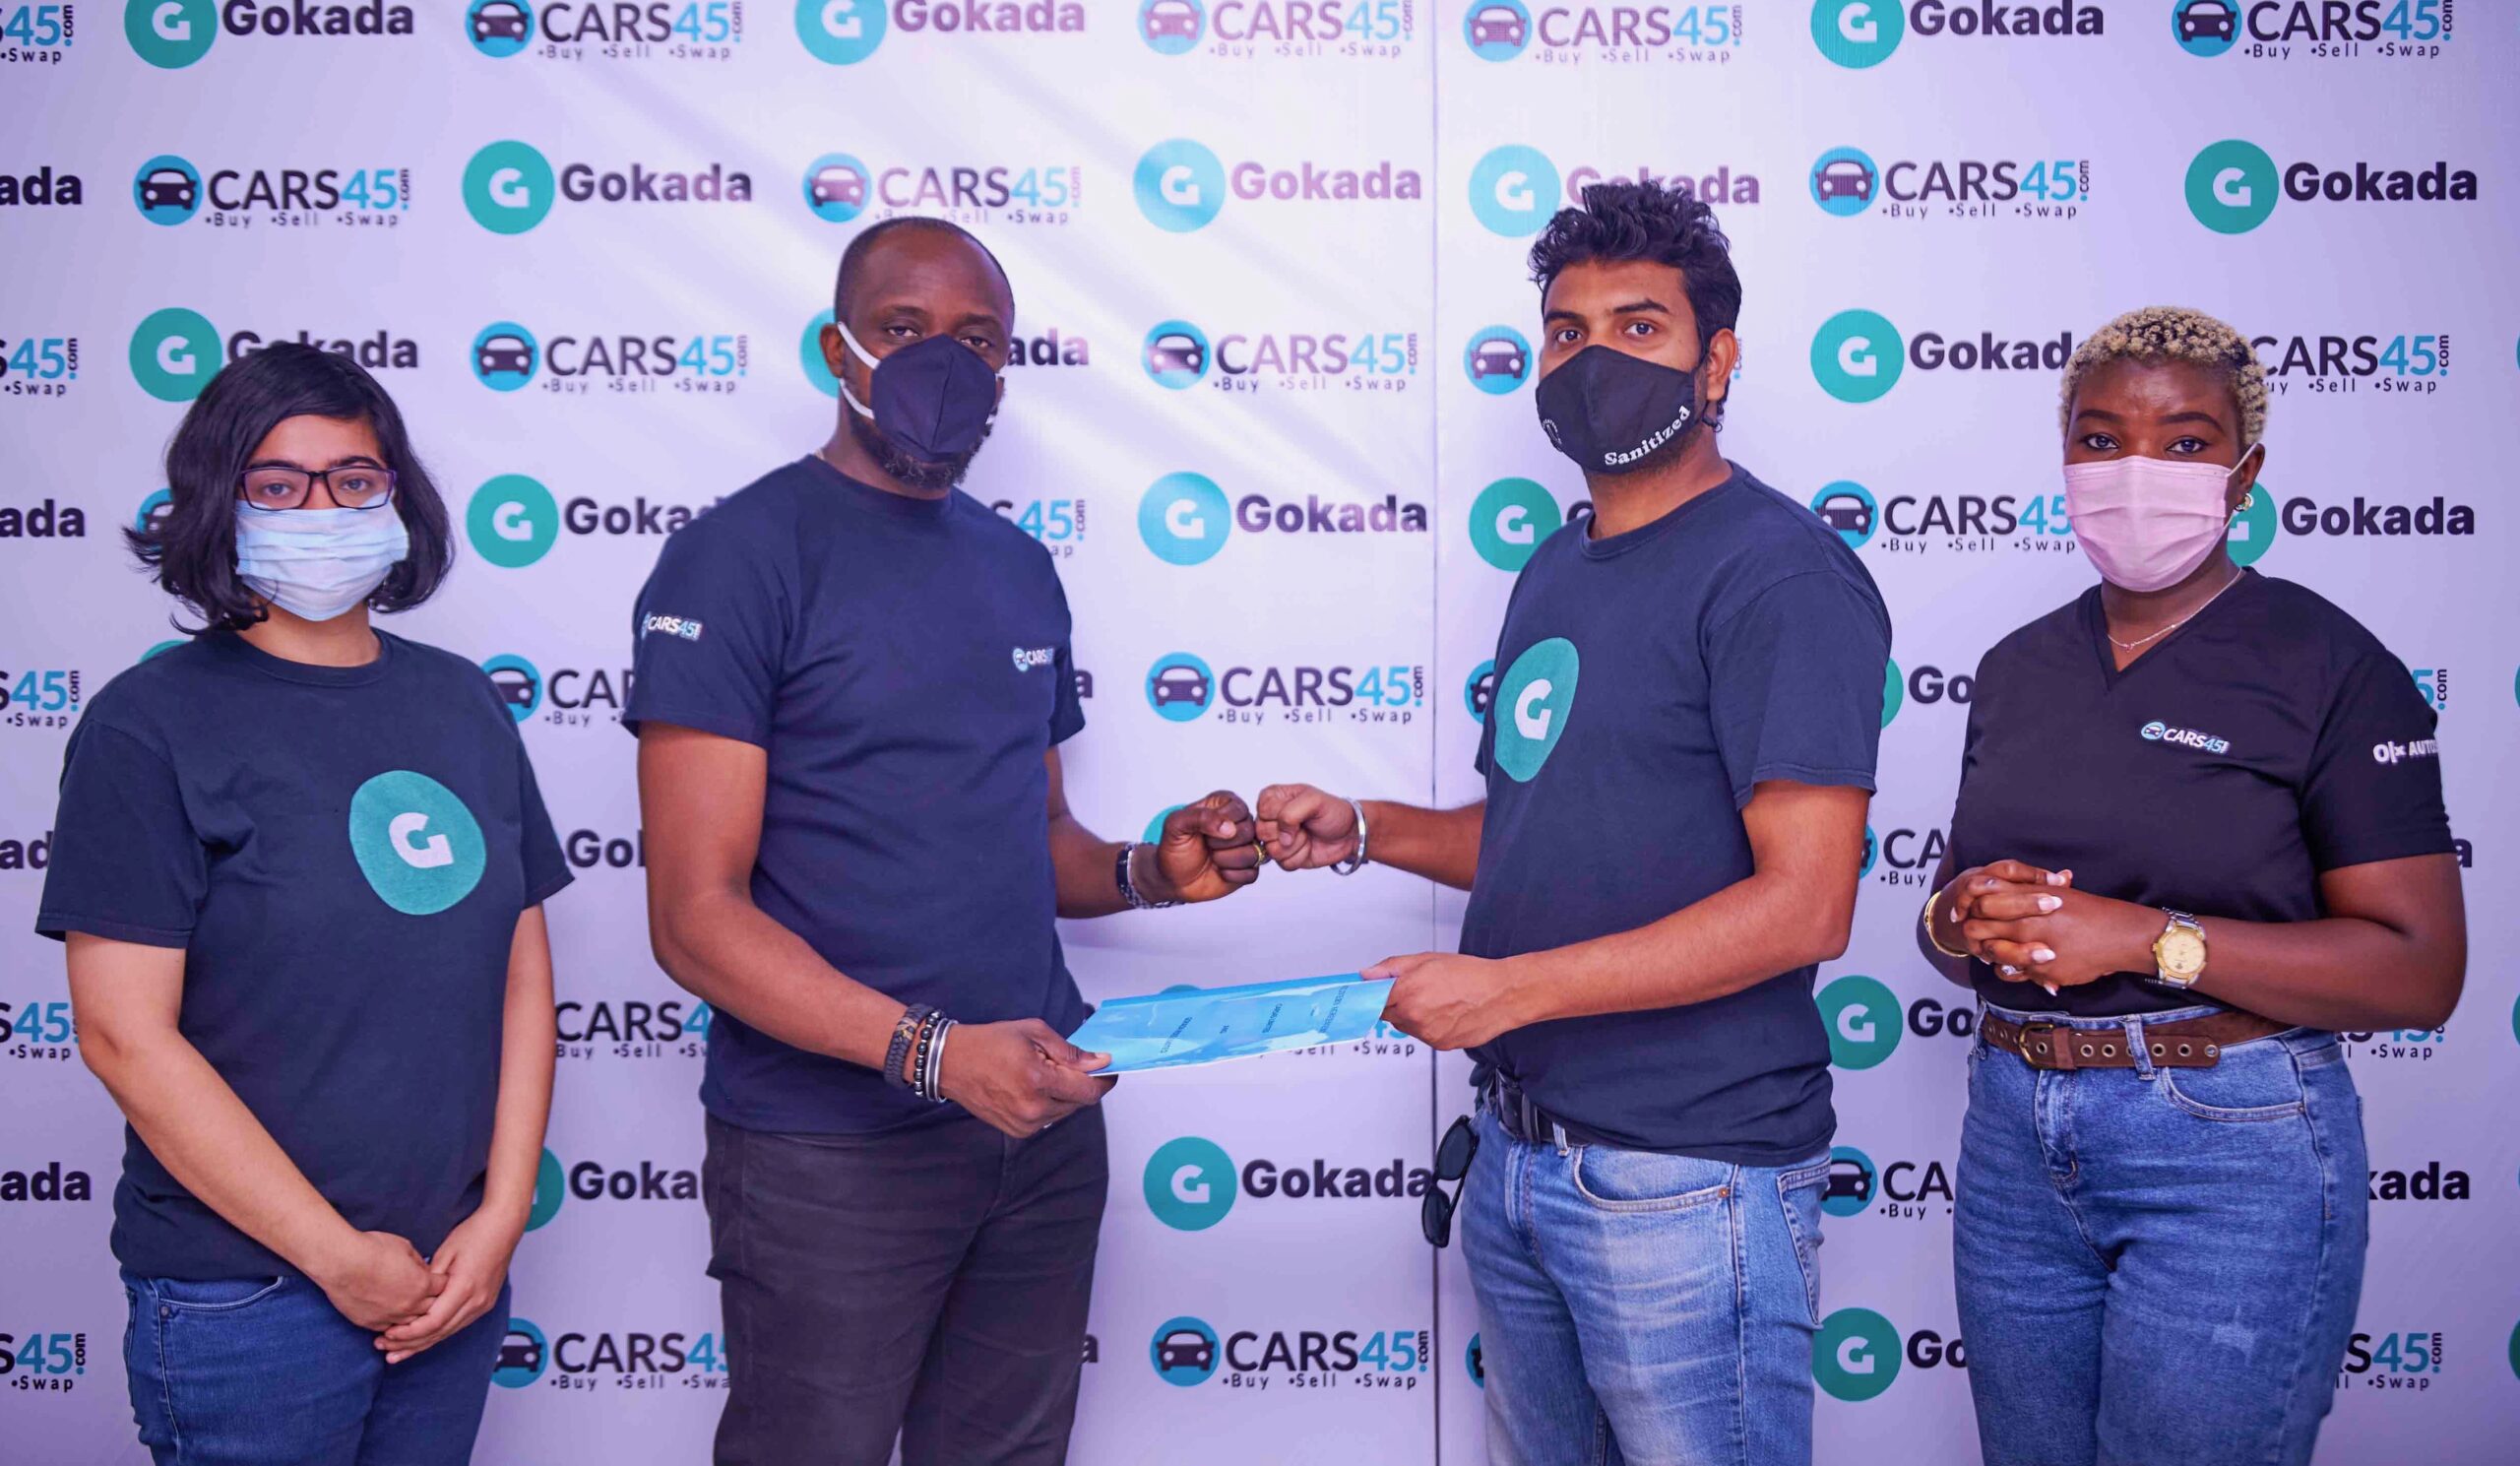 Cars45, Gokada Announce Partnership for Enhanced Customer Experience